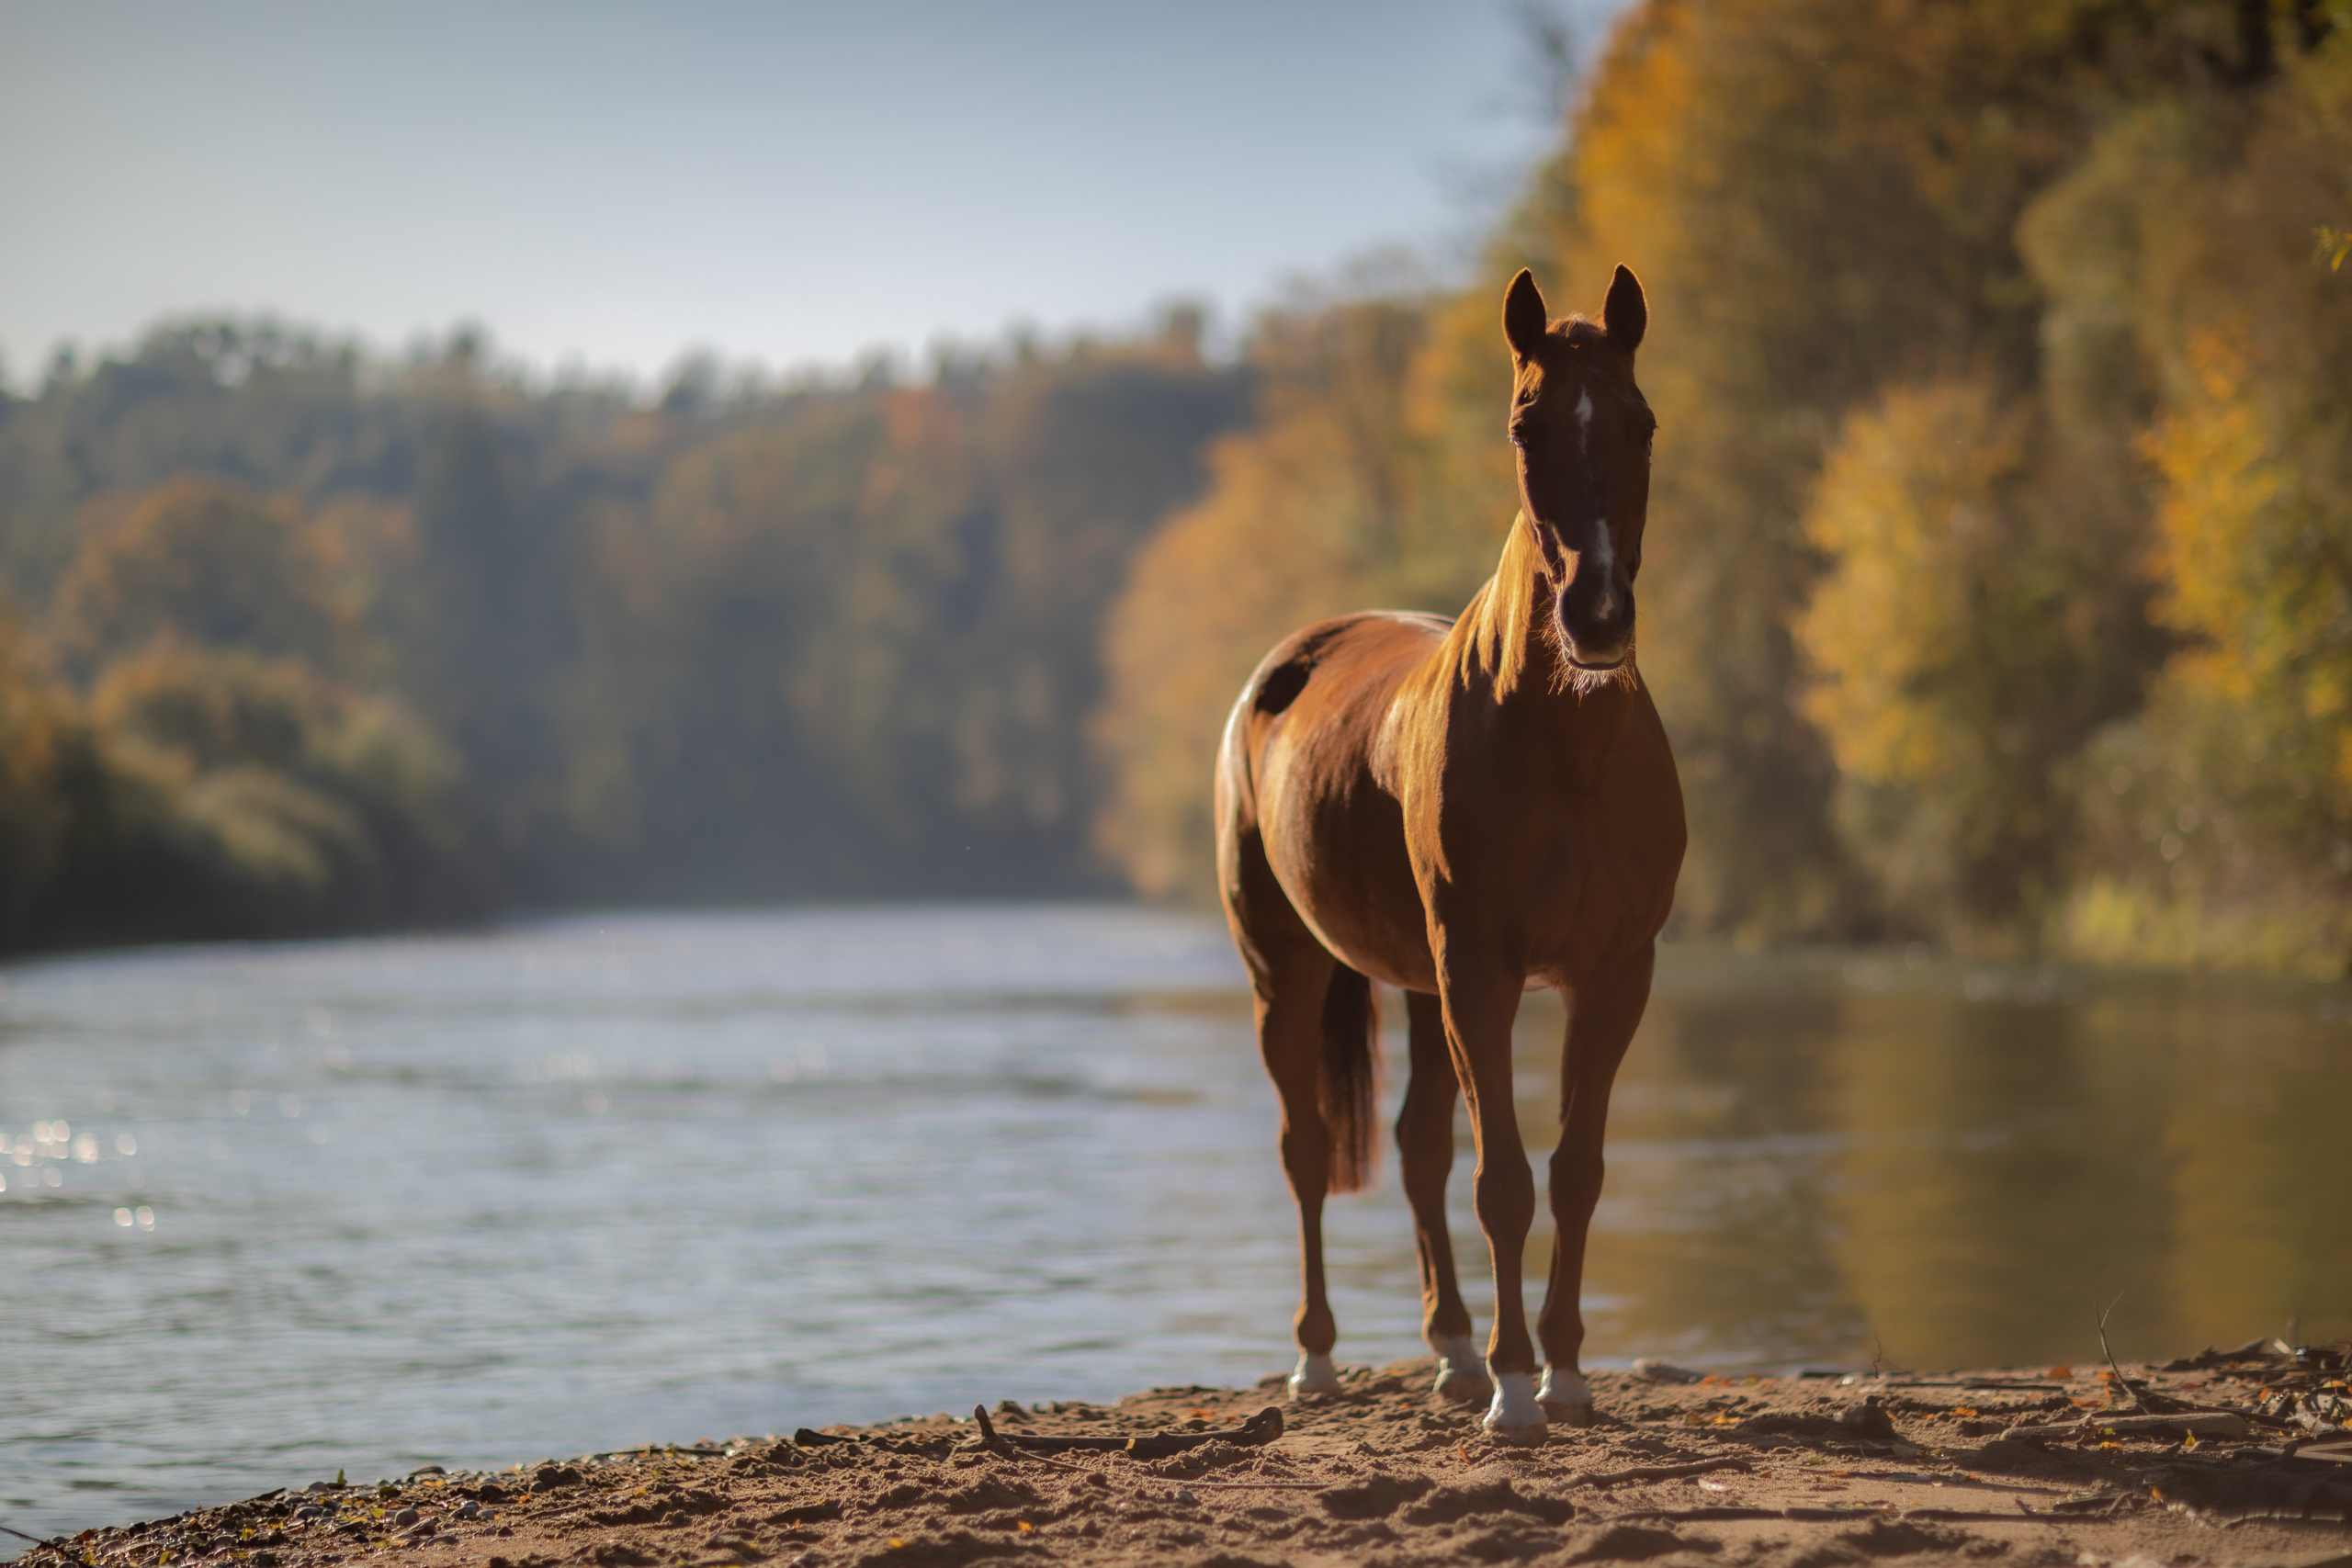 Fluss;Herbst;Pferde;Portfolio;Tierfotografie;lumo obscura;outdoor